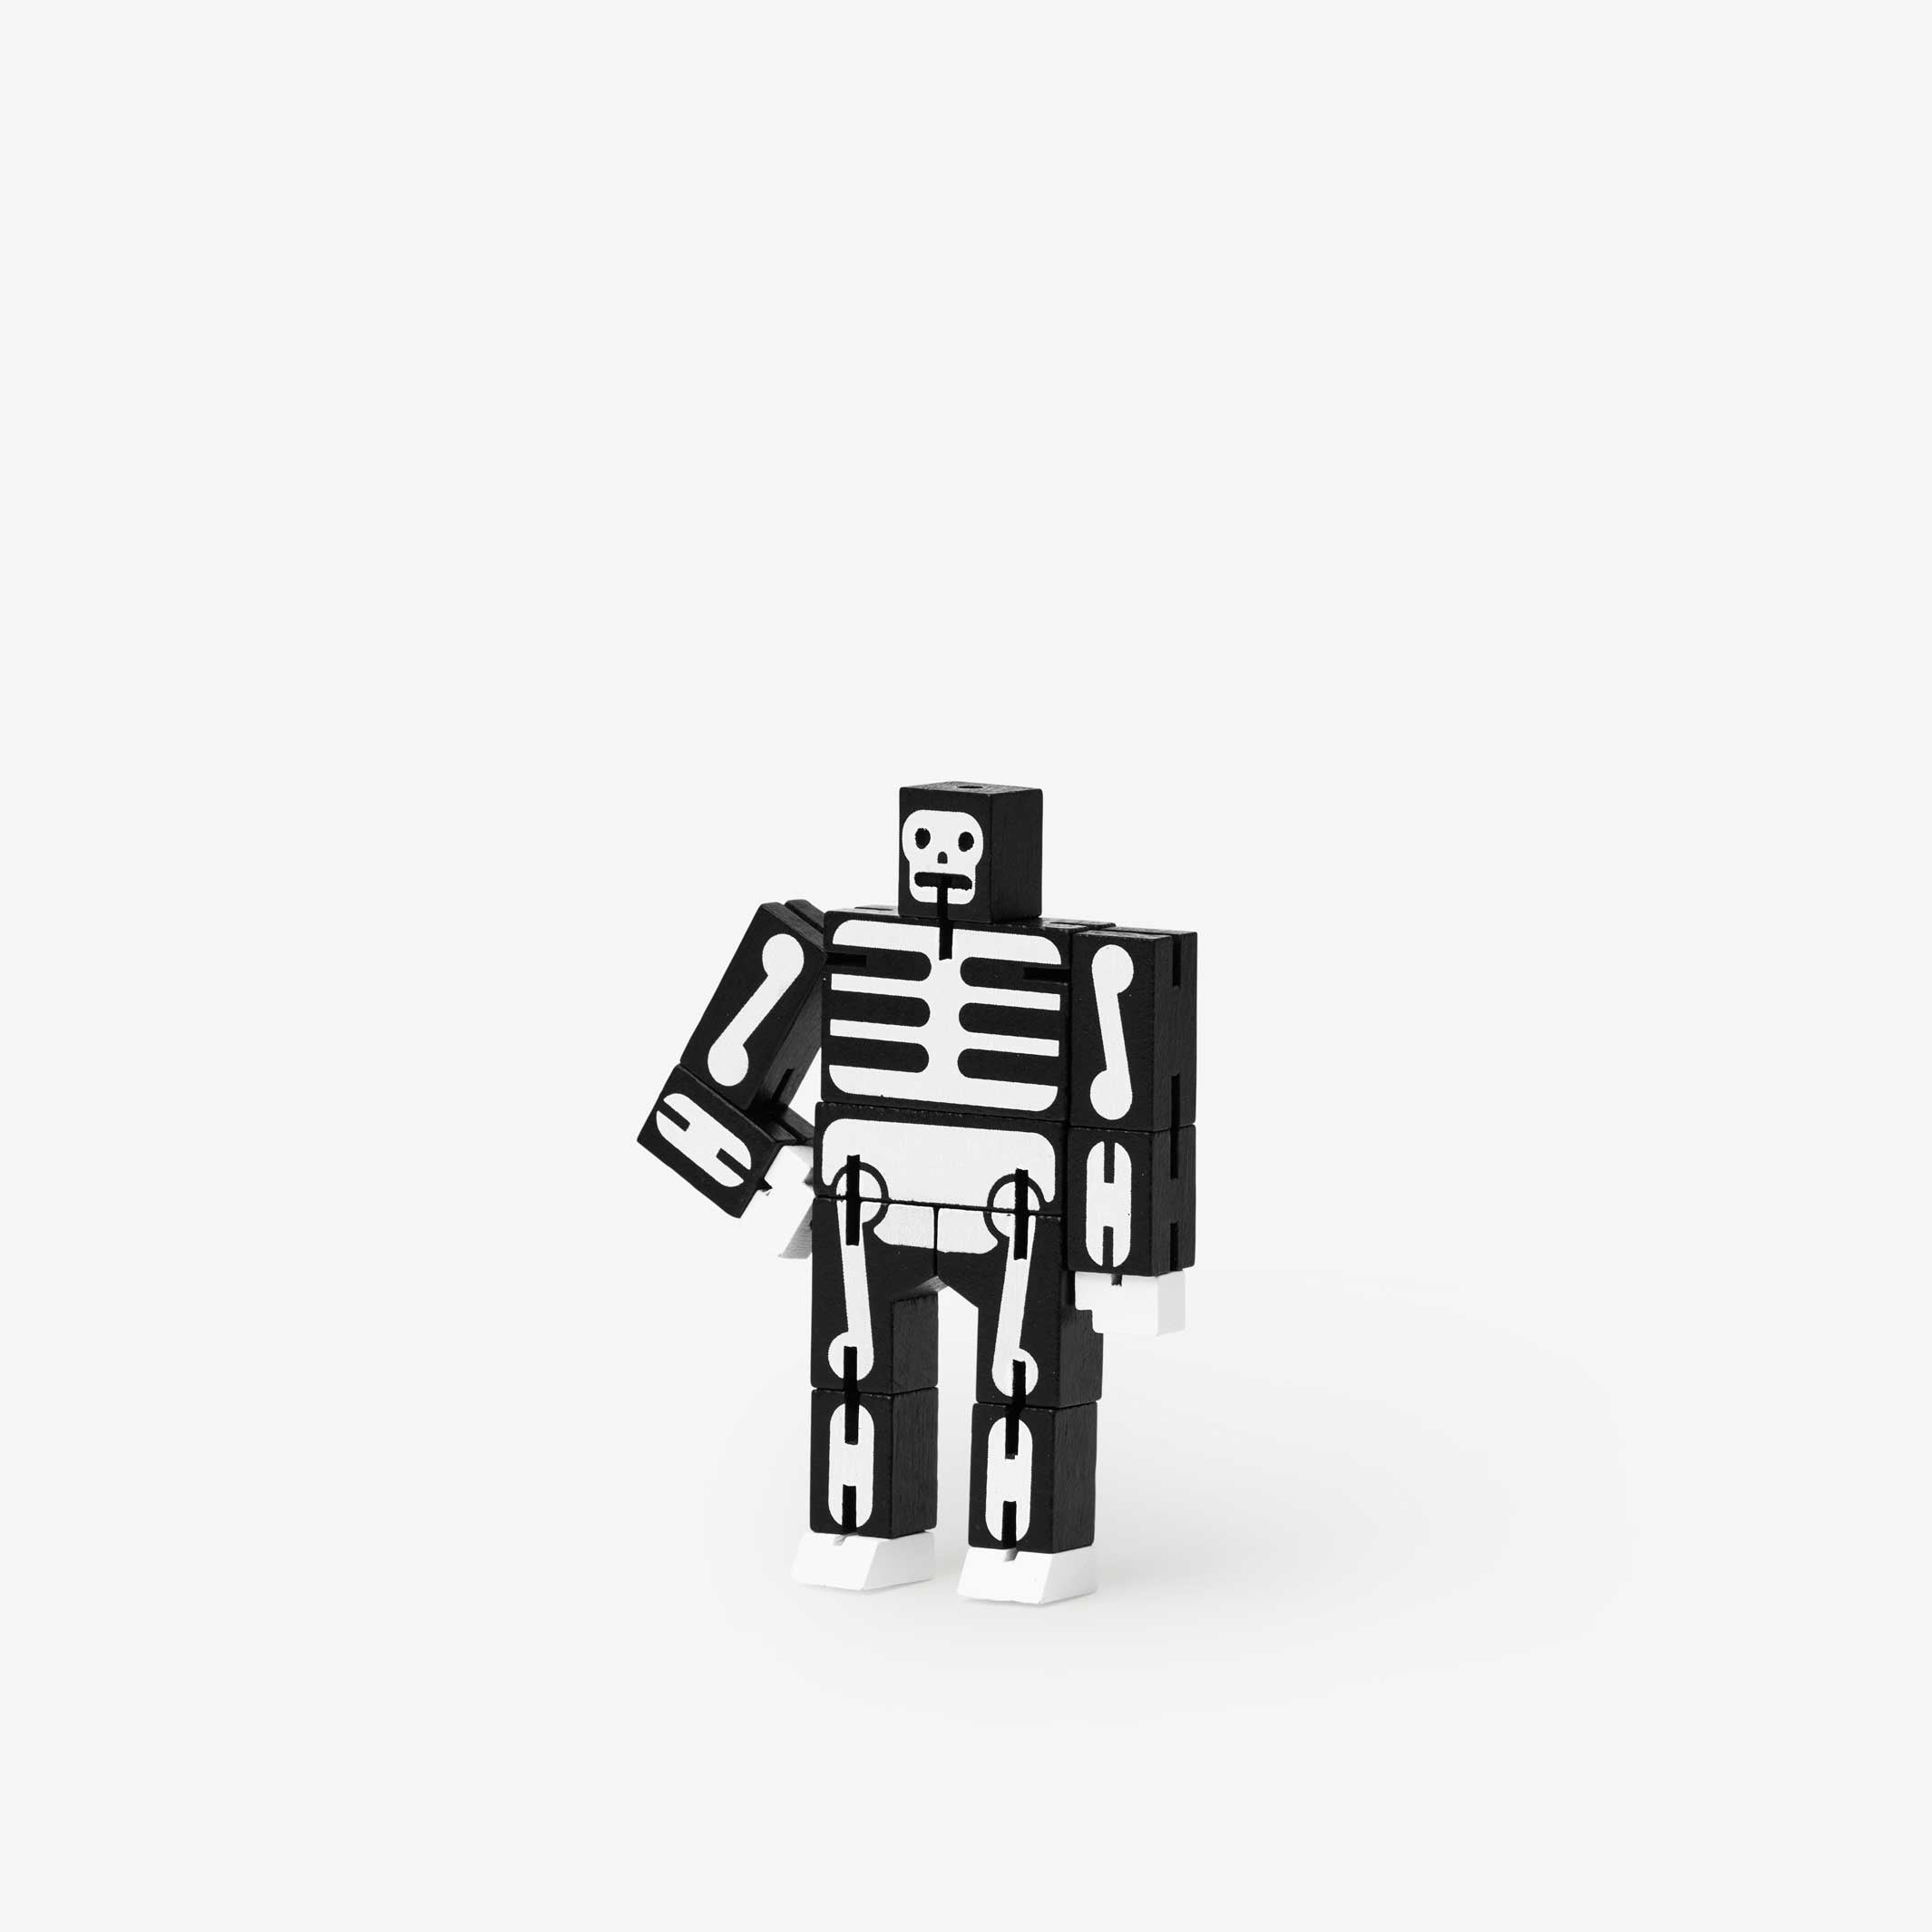 CUBEBOT Micro SKELETON | 3D PUZZLE ROBOT | David Weeks | Areaware